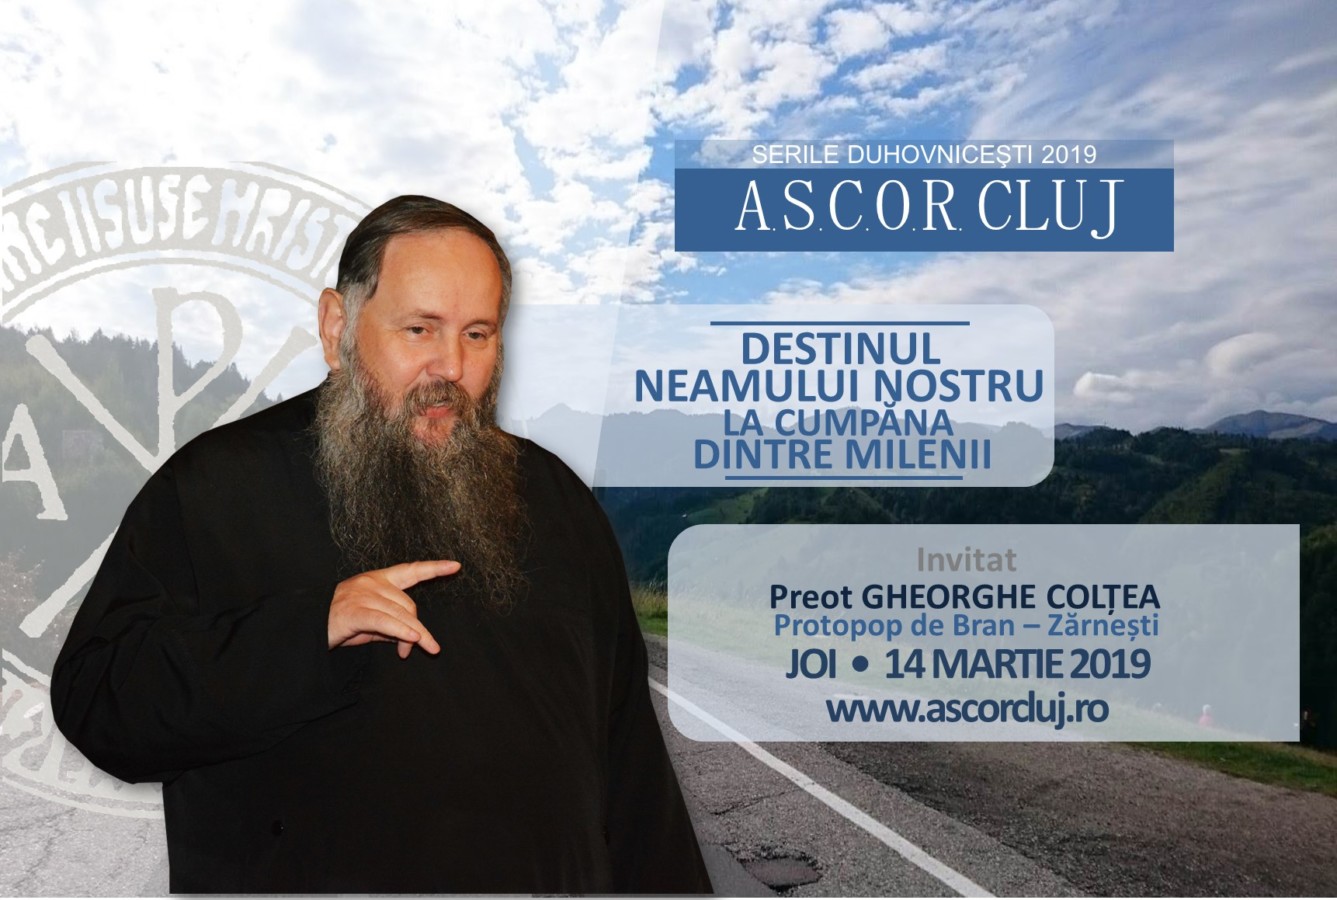 Destinul neamului nostru – Pr. Gheorghe Colțea – Serile duhovnicești ASCOR Cluj din Postul Mare 2019